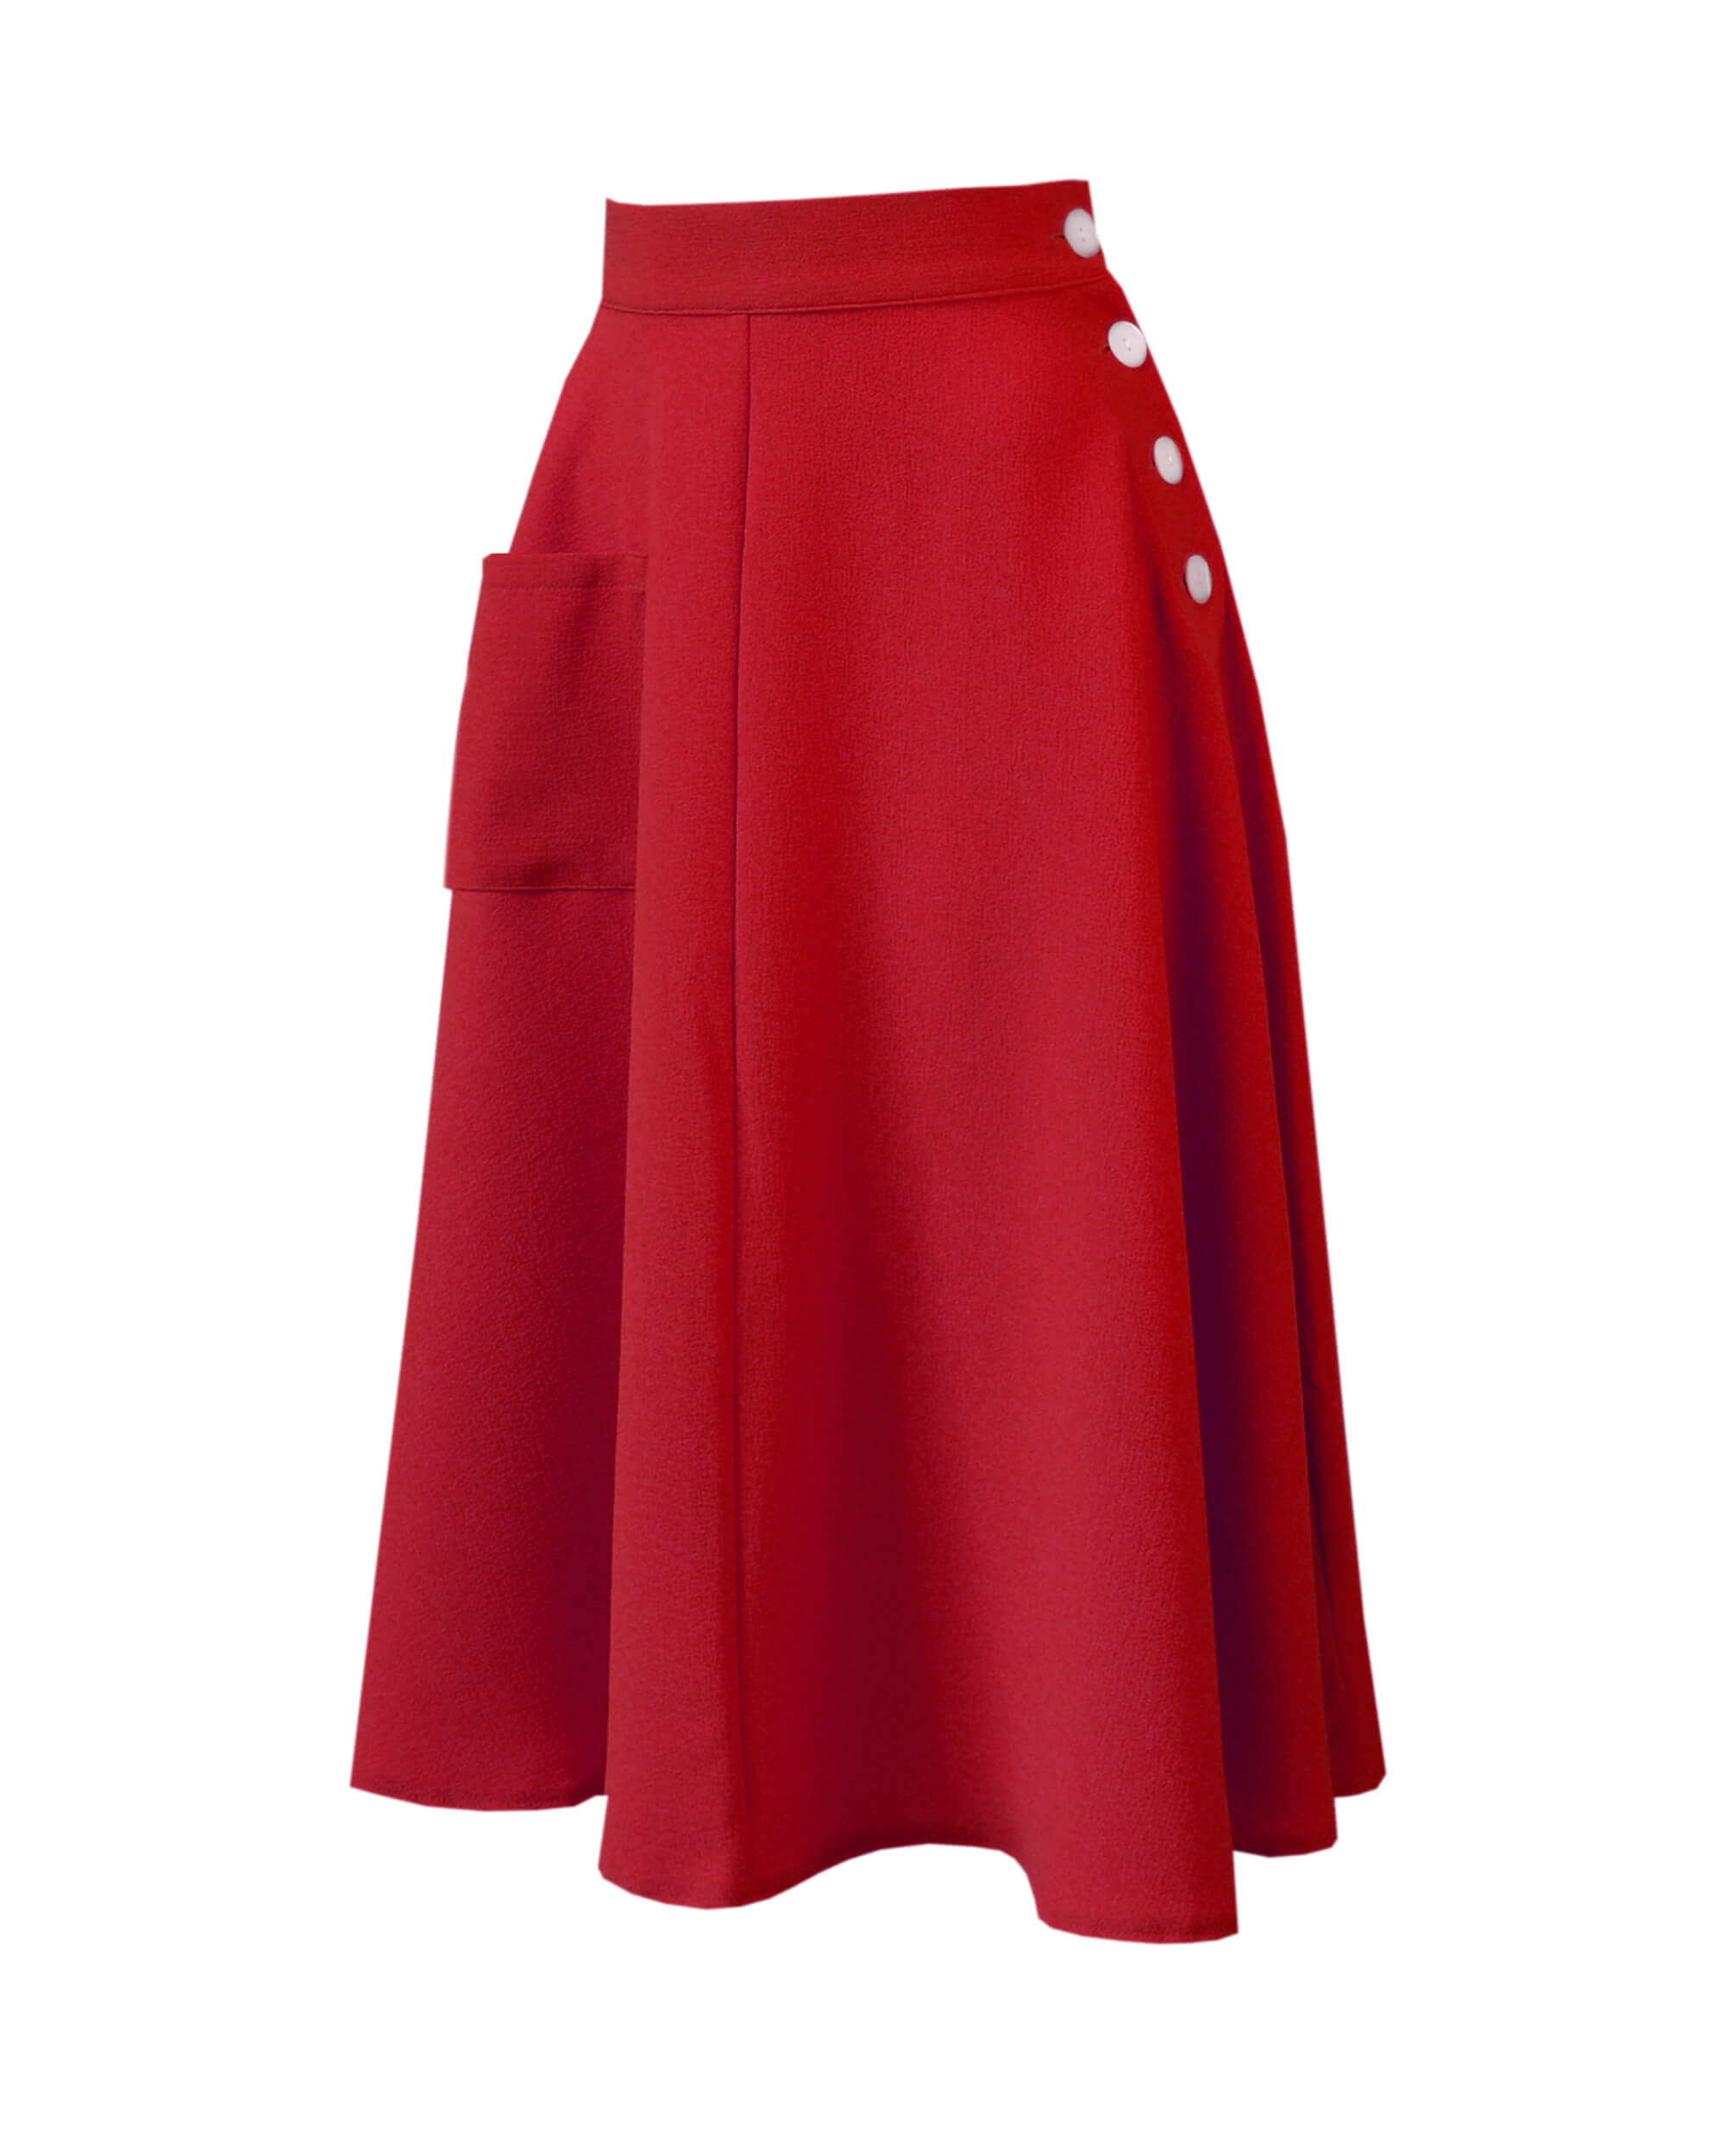 40s Whirlaway Skirt - Red